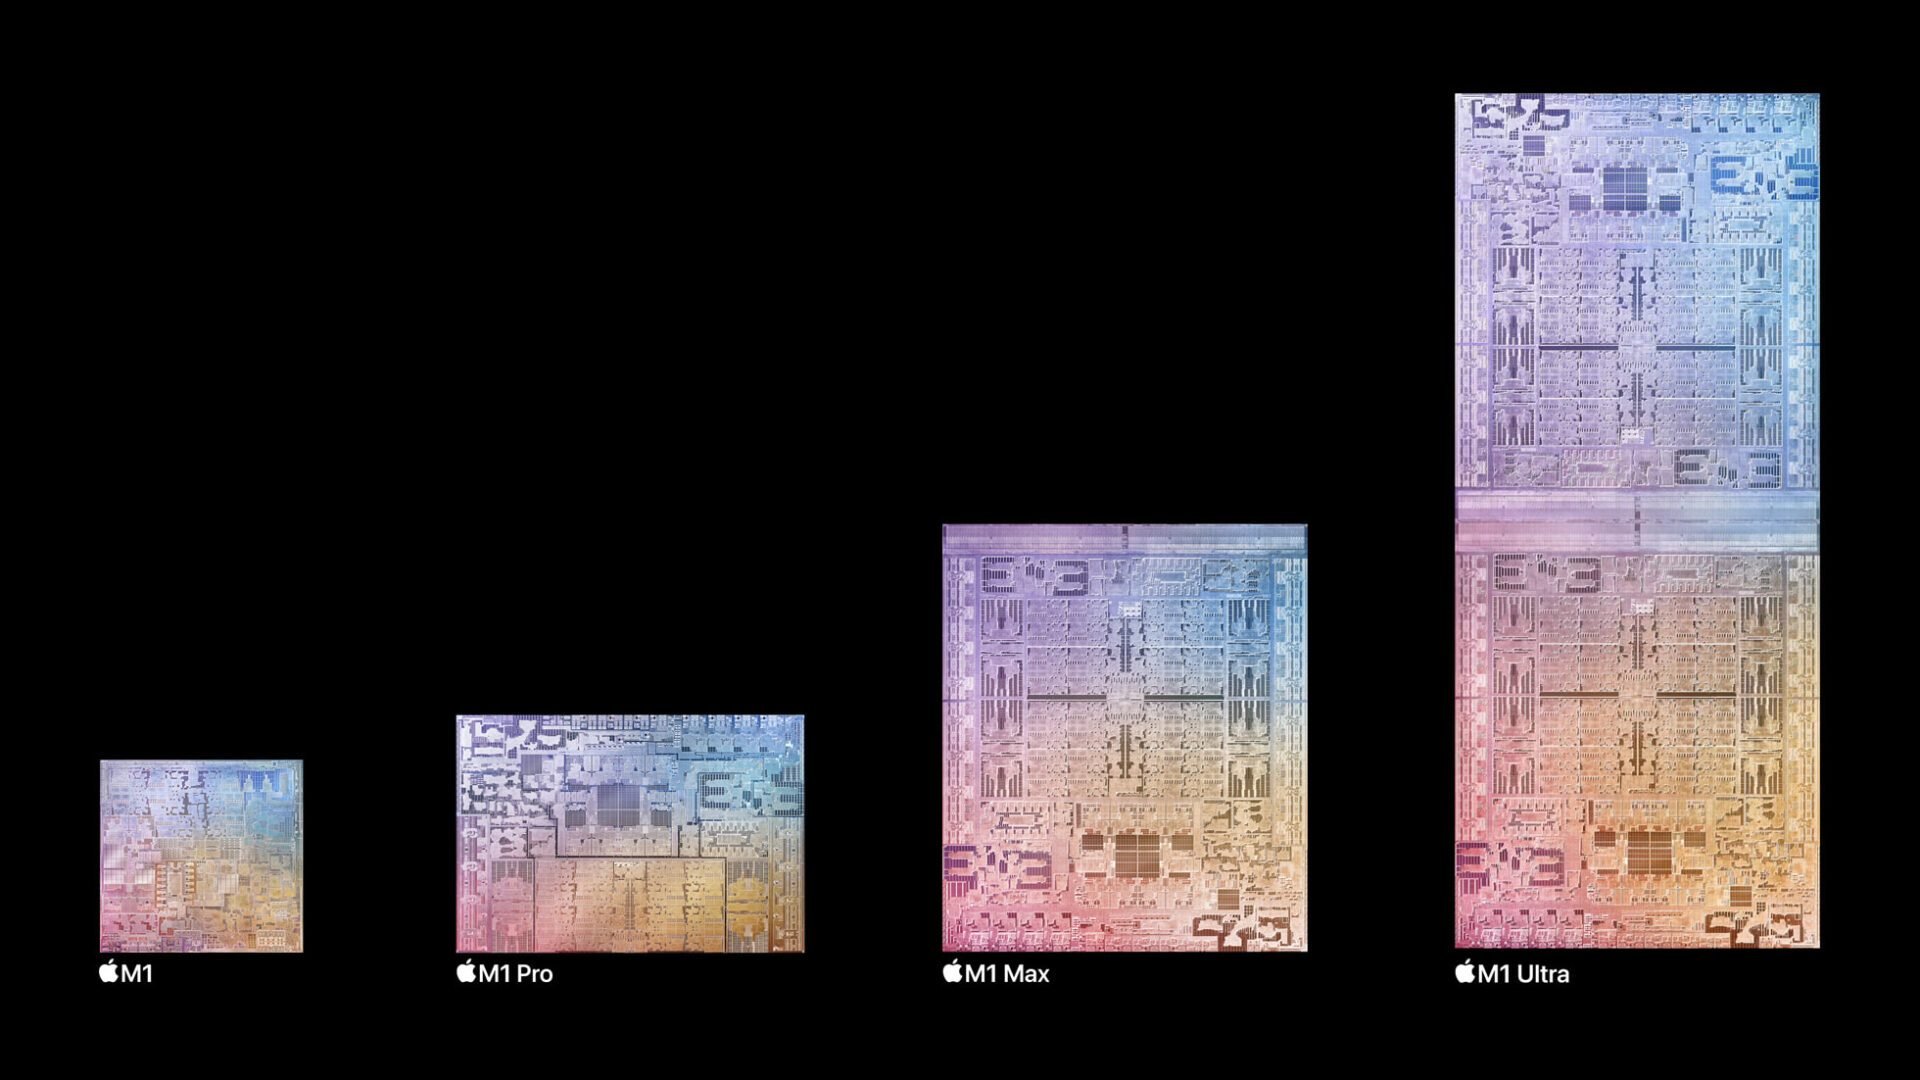 La gamme complète des M1. Le M1 « normal » est une puce solo, le M1 Pro est la fondation du M1 Max (ce dernier ayant une partie GPU étendue) et le M1 Ultra consiste en deux M1 Max collés côte à côte. © Apple